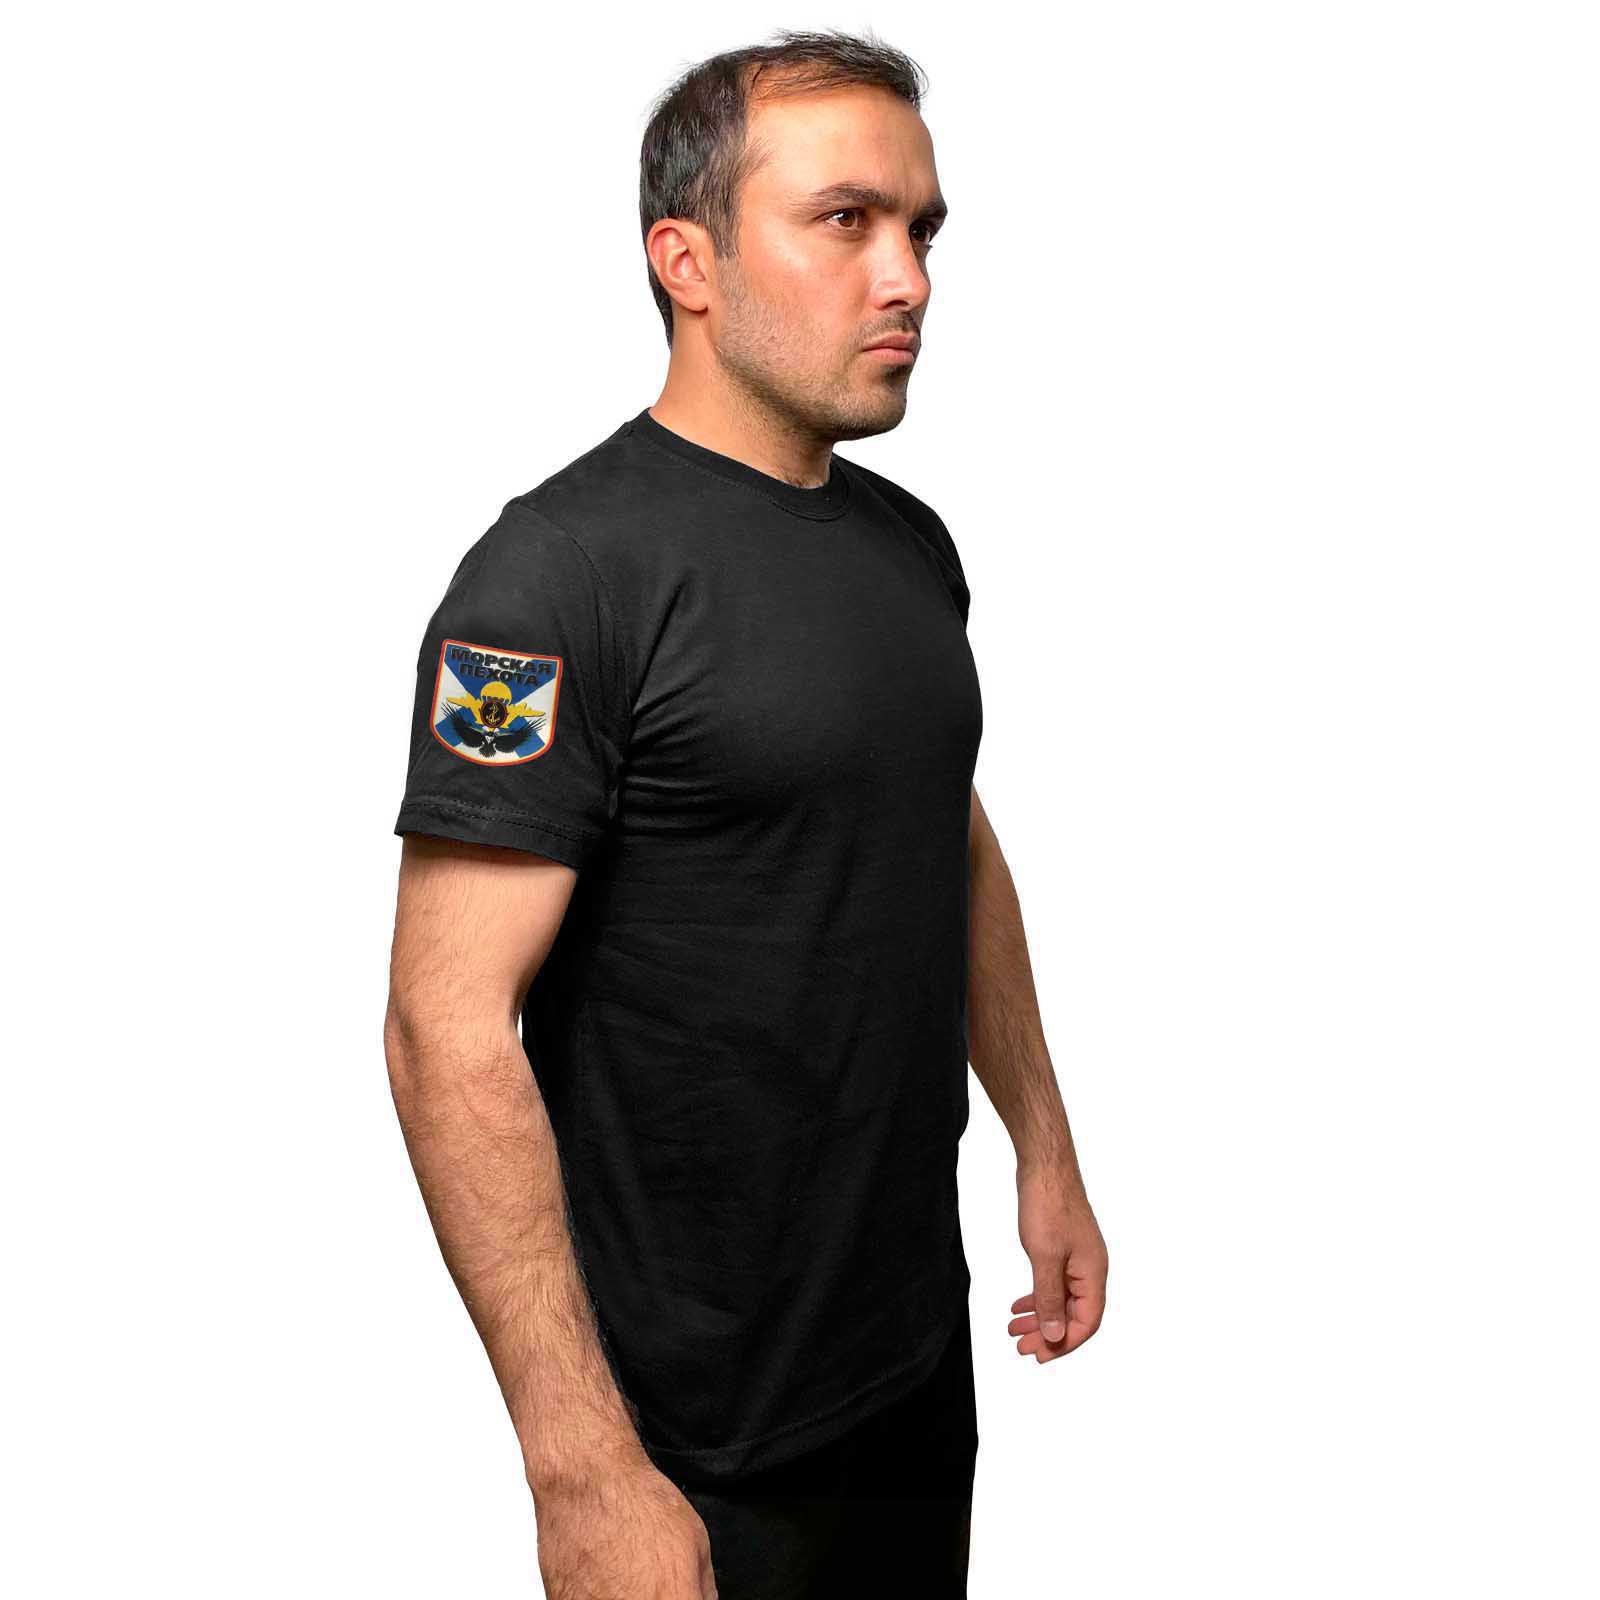 Чёрная футболка с термопринтом "Морская пехота" на рукаве